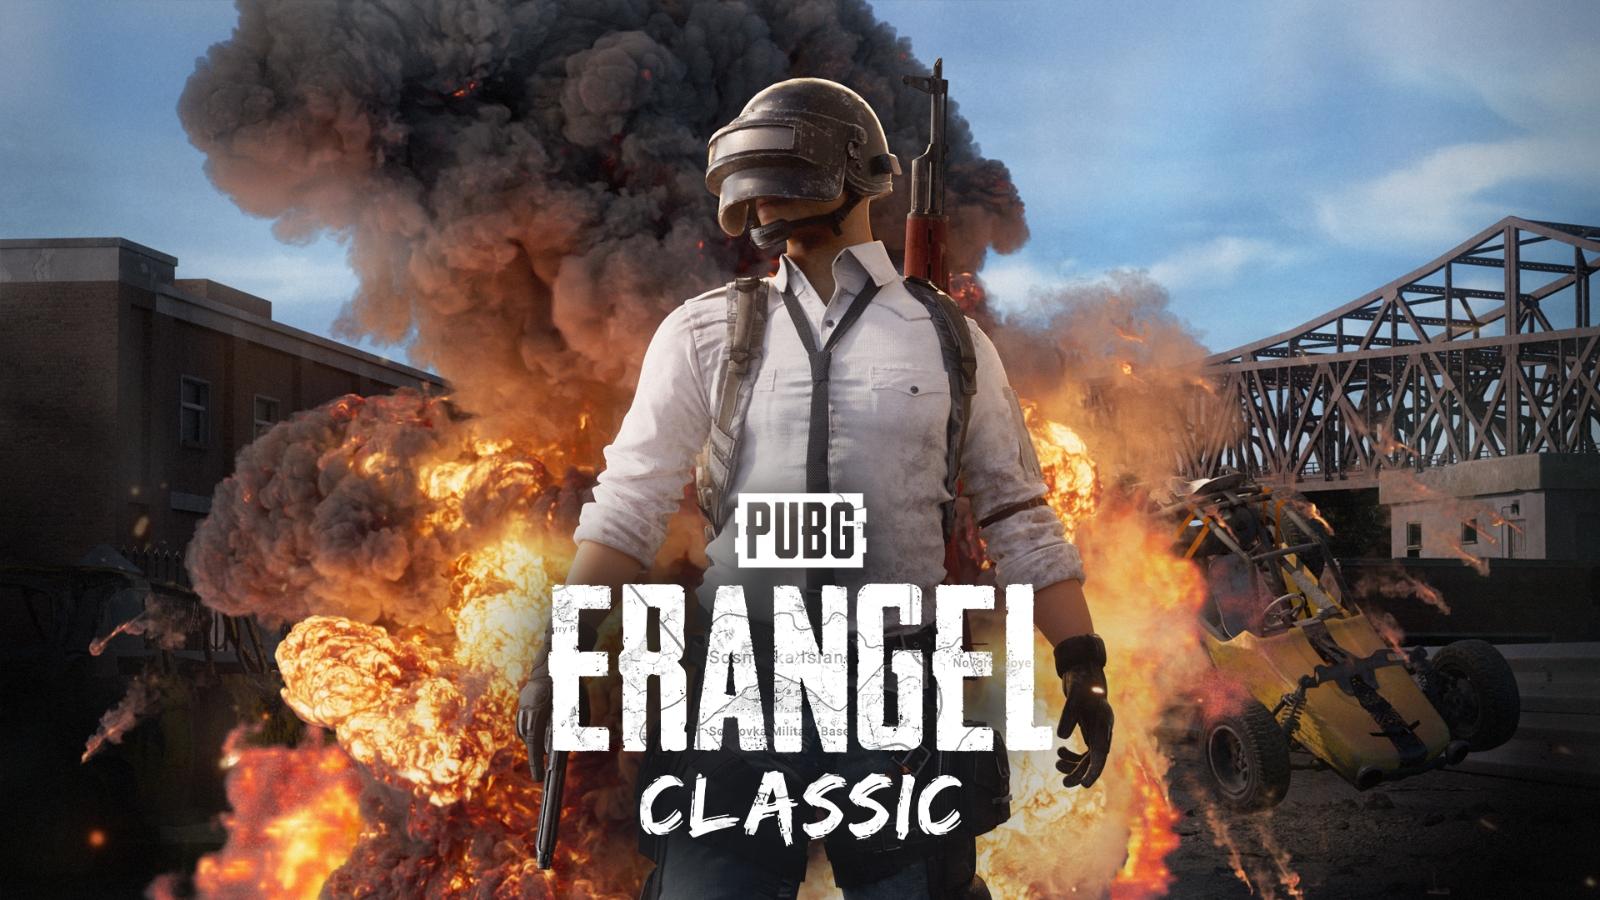 PUBG Erangel Classic cover image